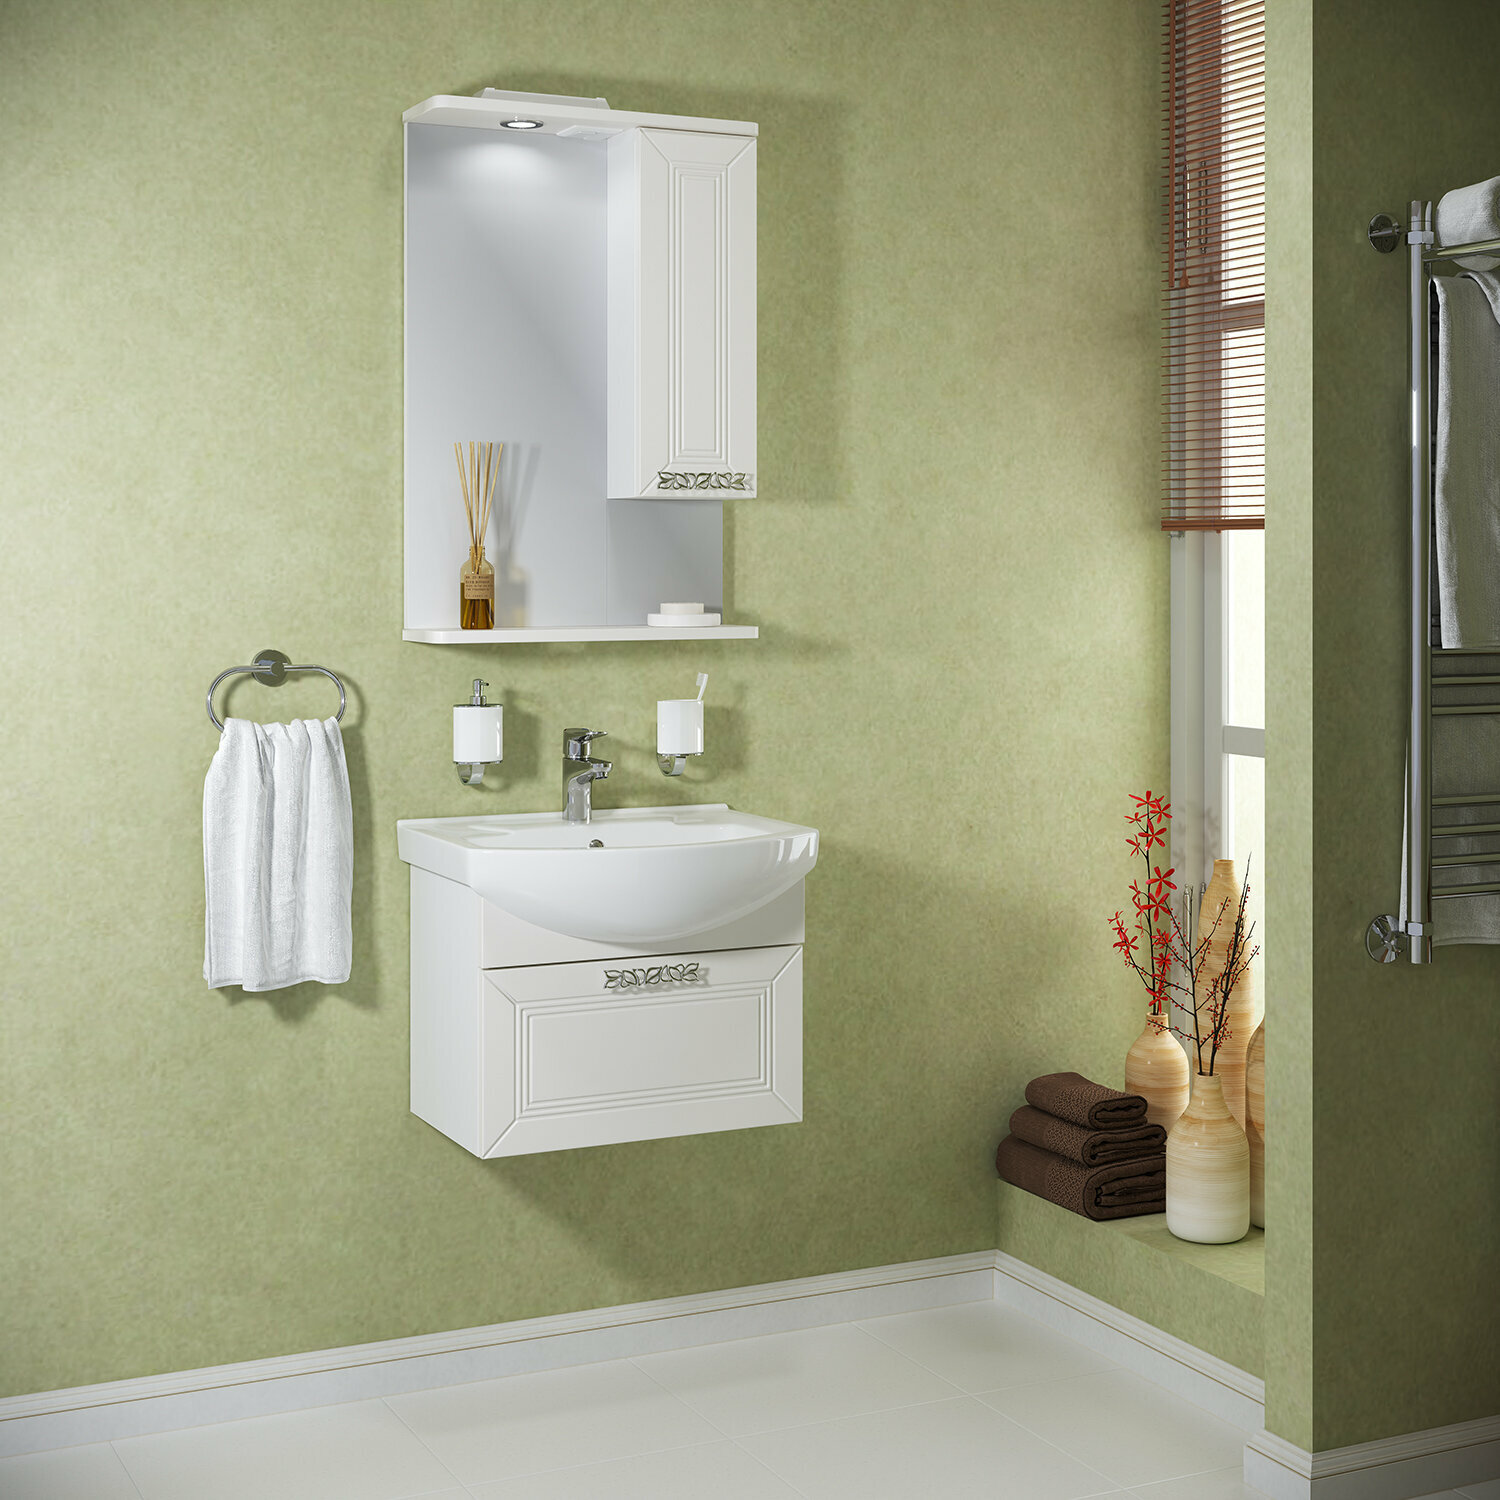 Мебель для ванной / Runo / Монро 55 напольный / тумба с раковиной Элеганс 55 / шкаф для ванной / зеркало для ванной